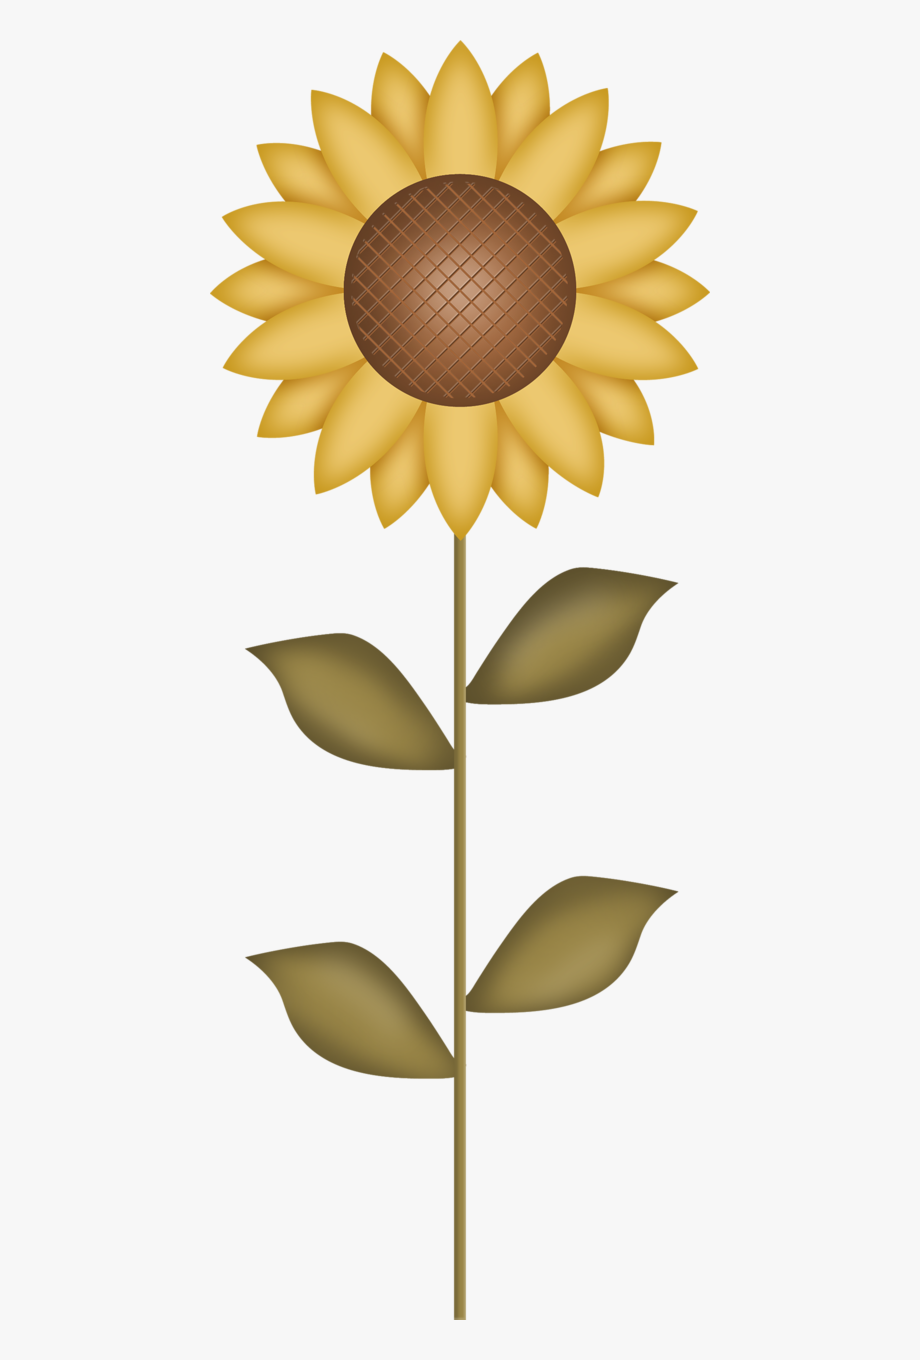 Harvest clipart sunflower.